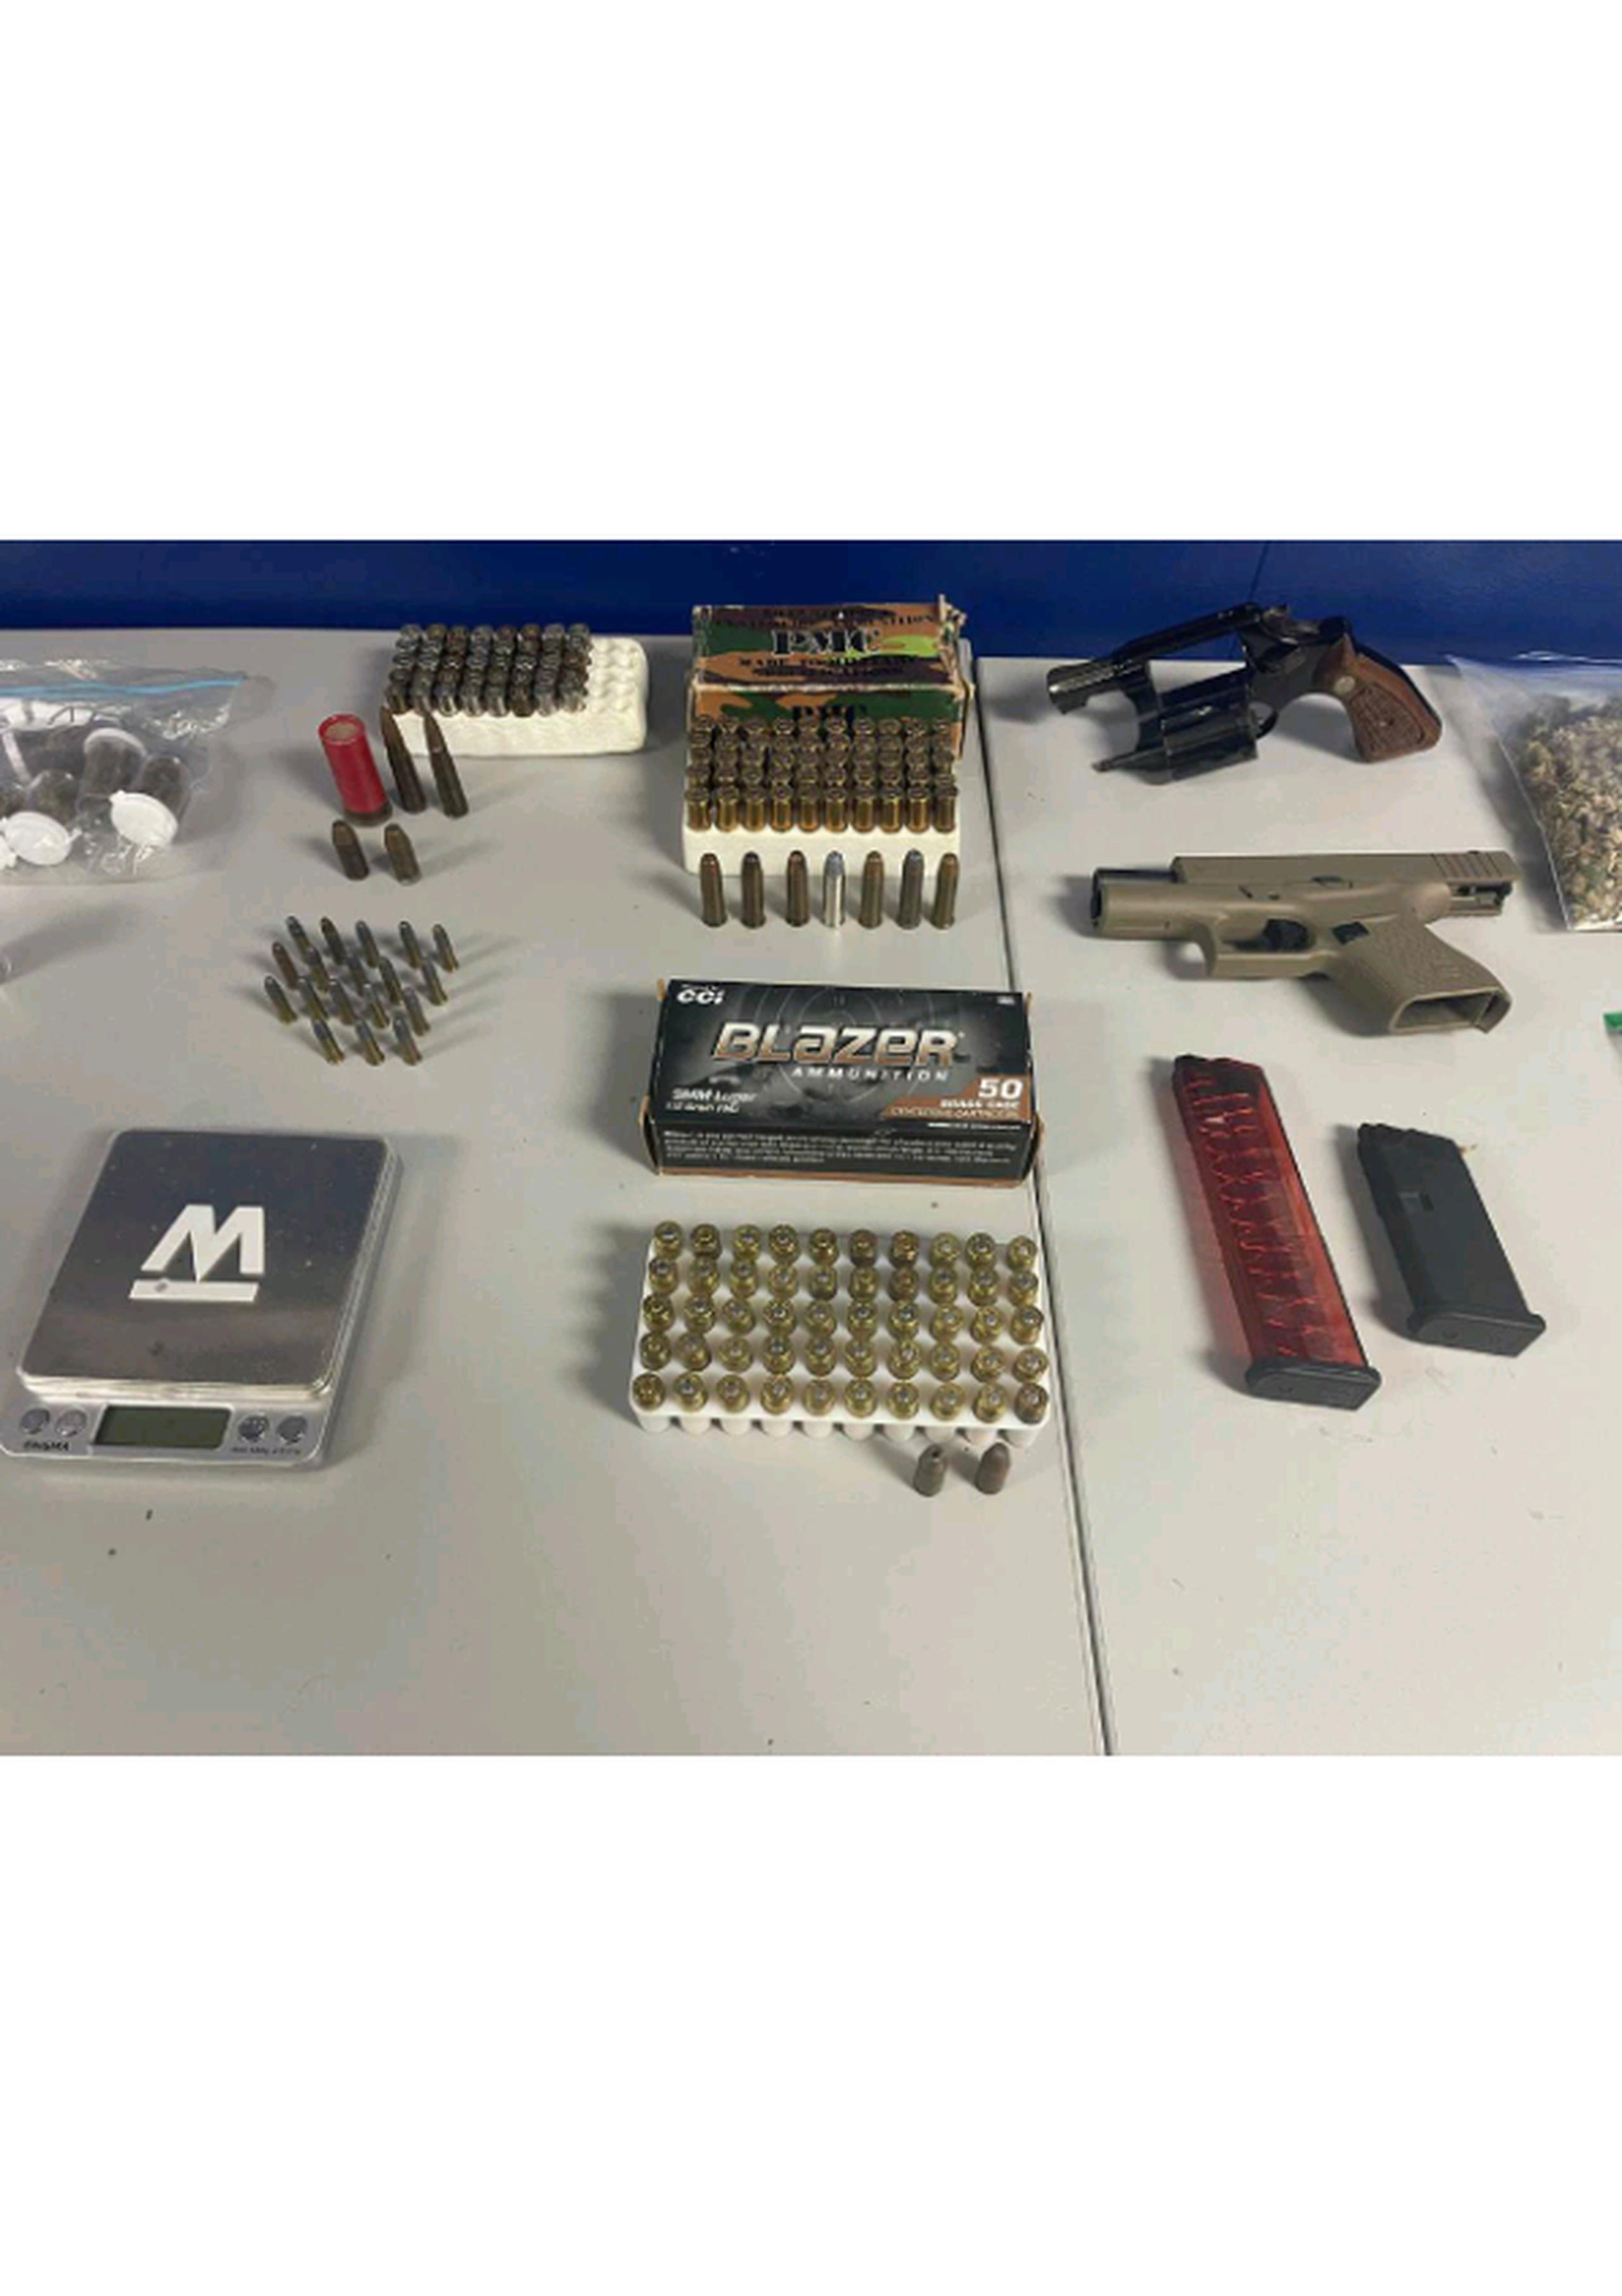 La División de Drogas Metropolitana ocupó las armas de fuego, cargamentos y municiones, durante un allanamiento en el barrio Sabana Seca, en Toa Baja.